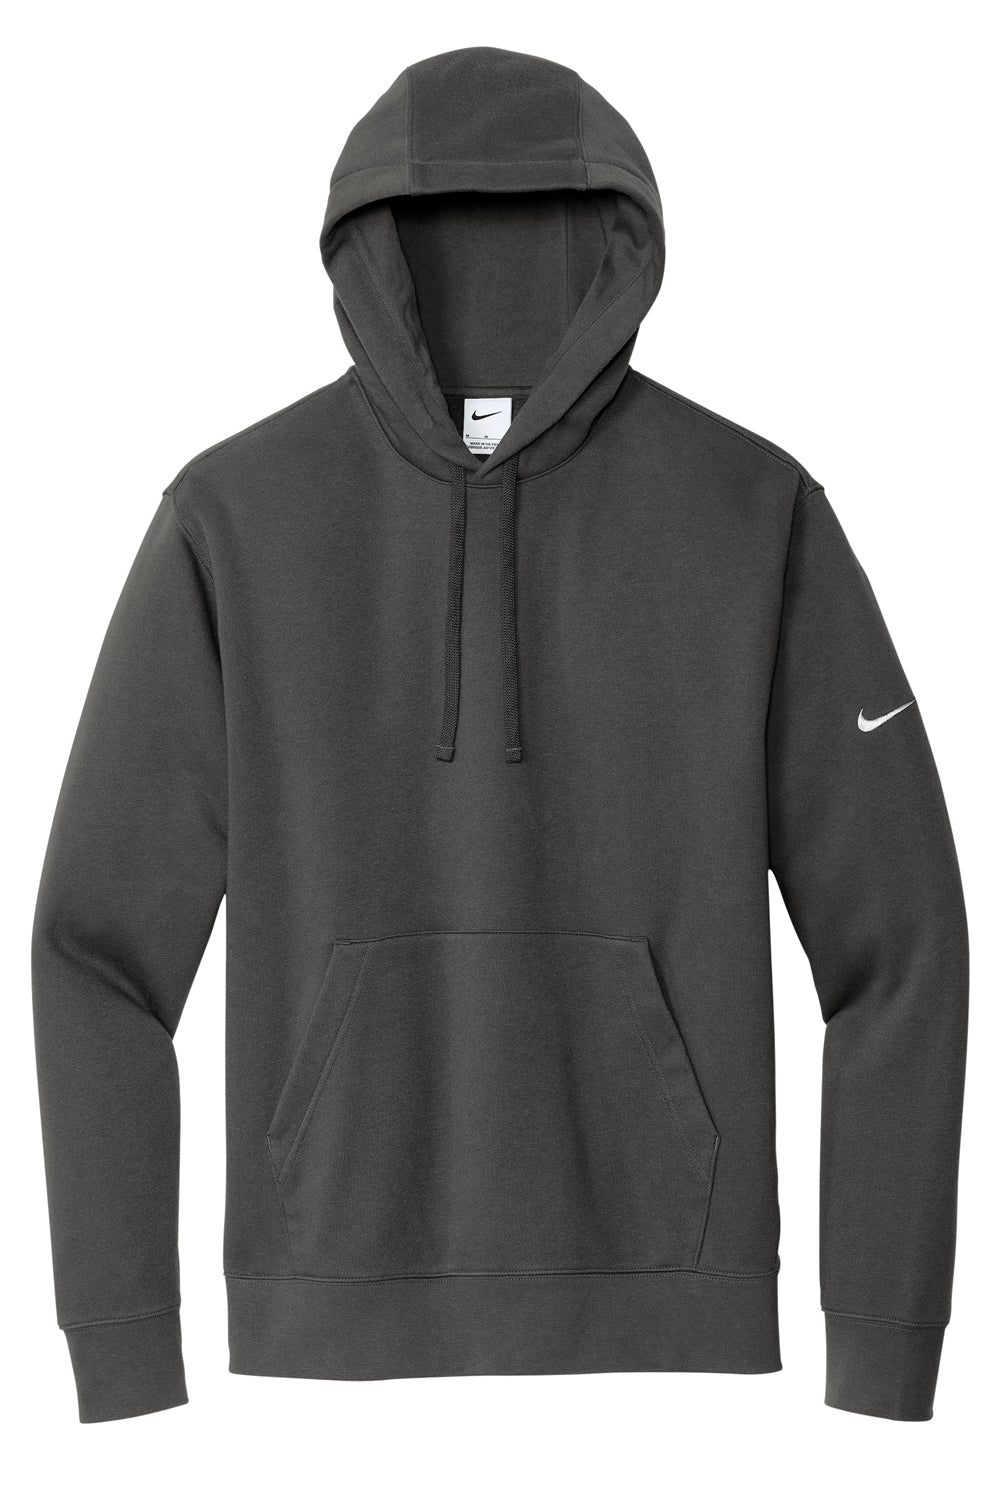 Nike NKDR1499 Mens Club Fleece Hooded Sweatshirt Hoodie Anthracite Grey Flat Front